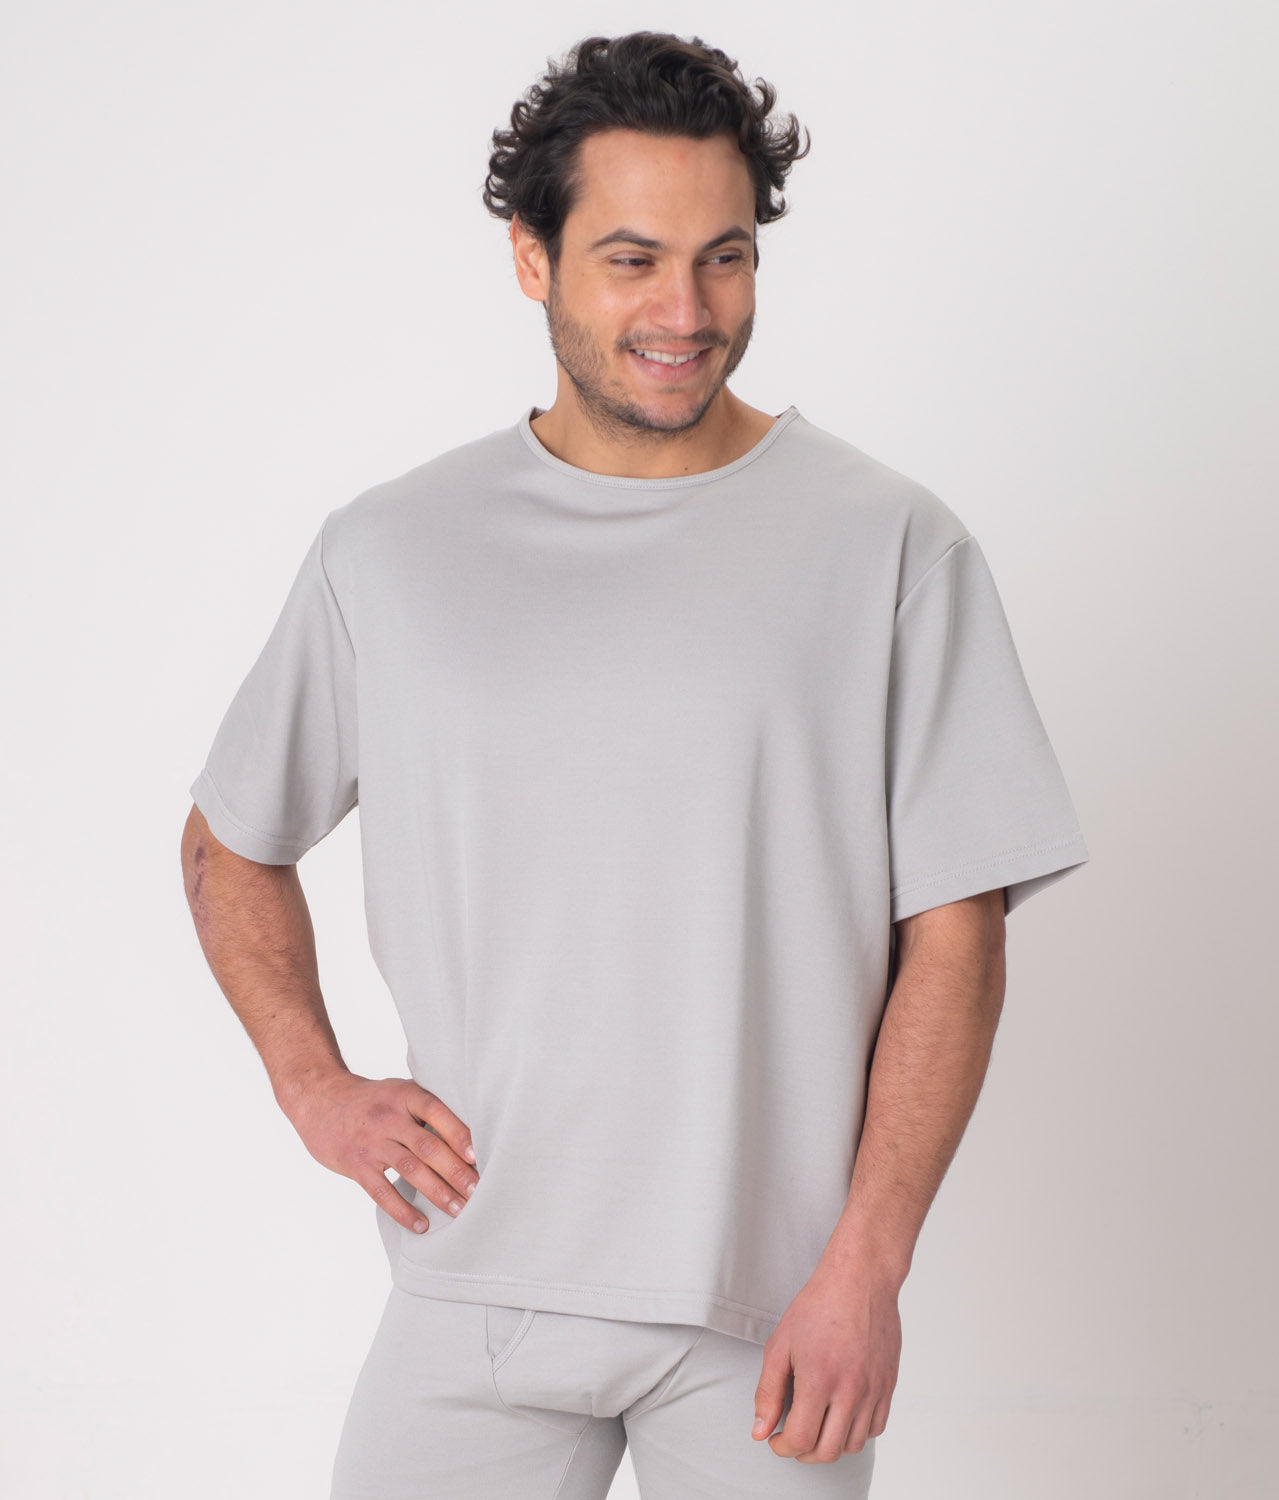 EMF Shielding T-Shirt for Men